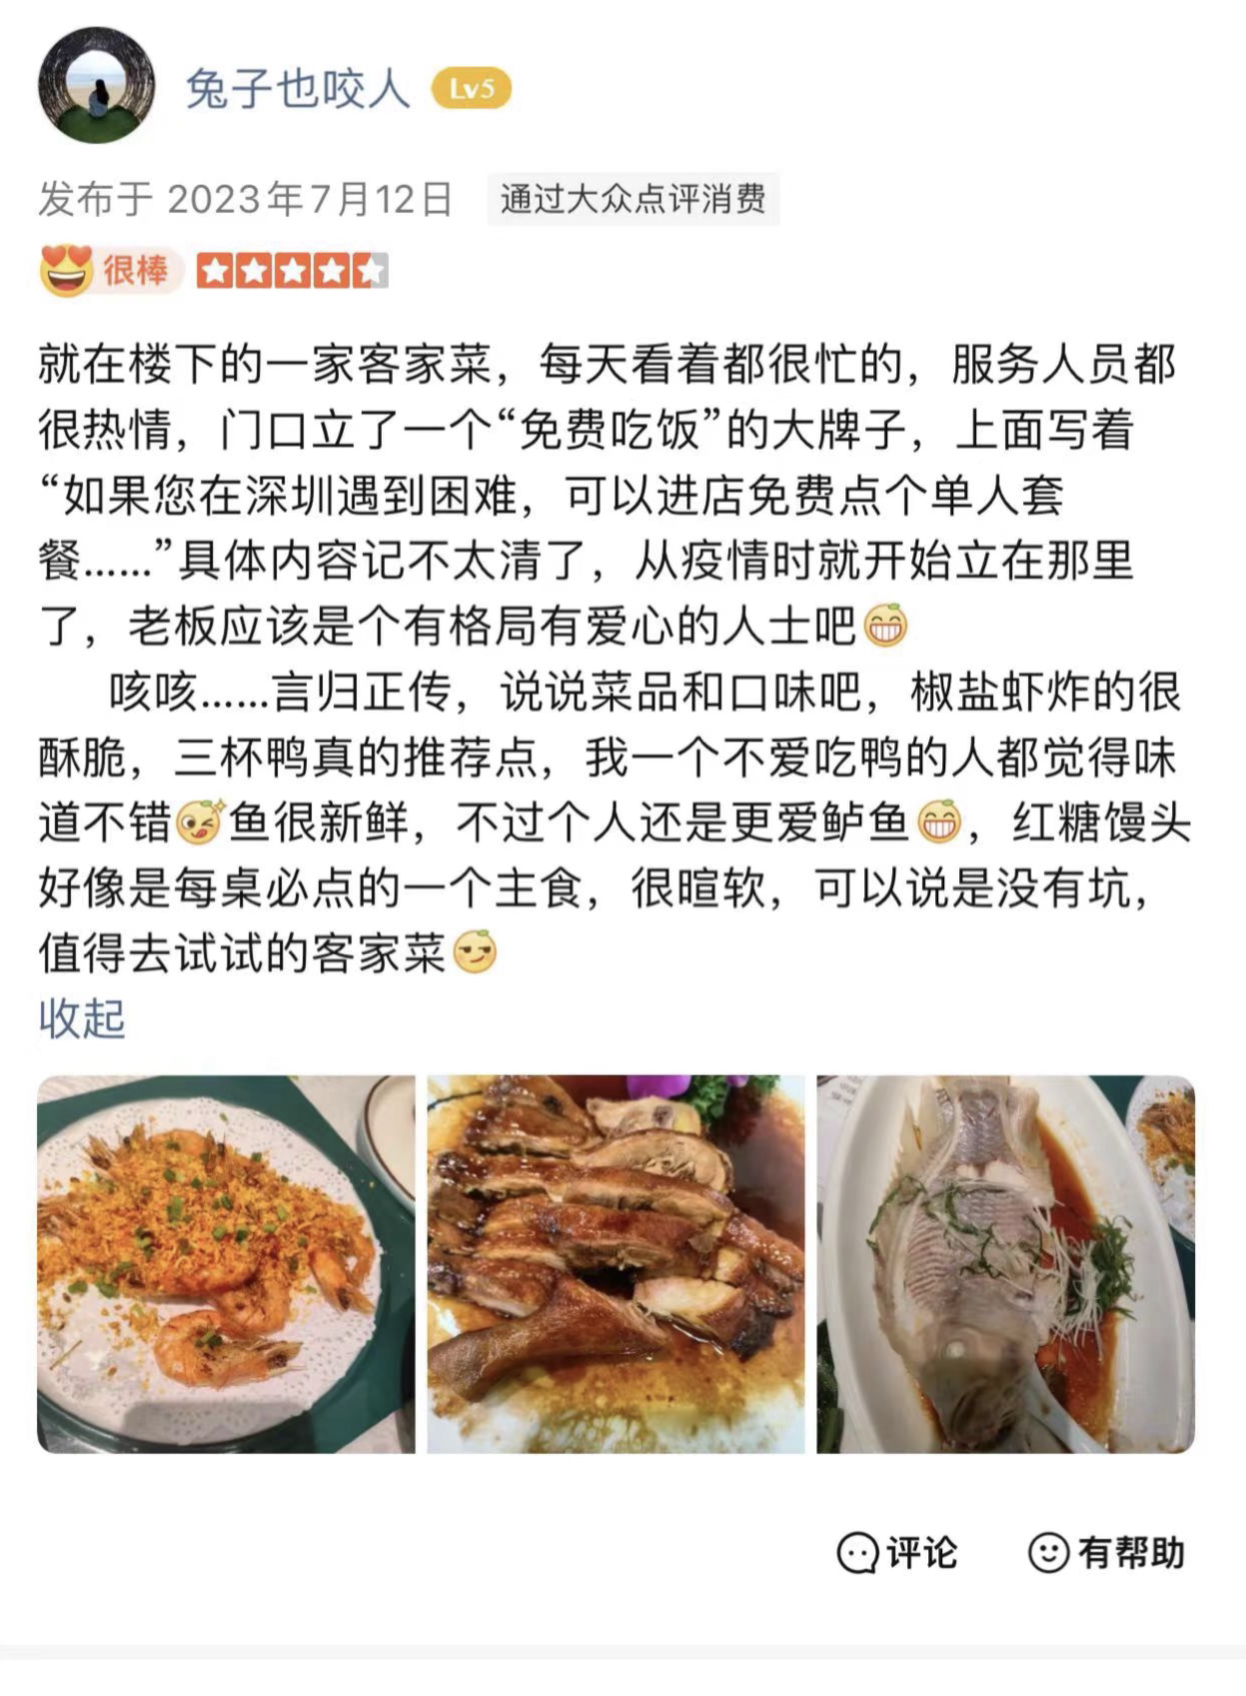 遇到困難可免費吃飯！深圳一餐館老板“免費午餐”送了5年5